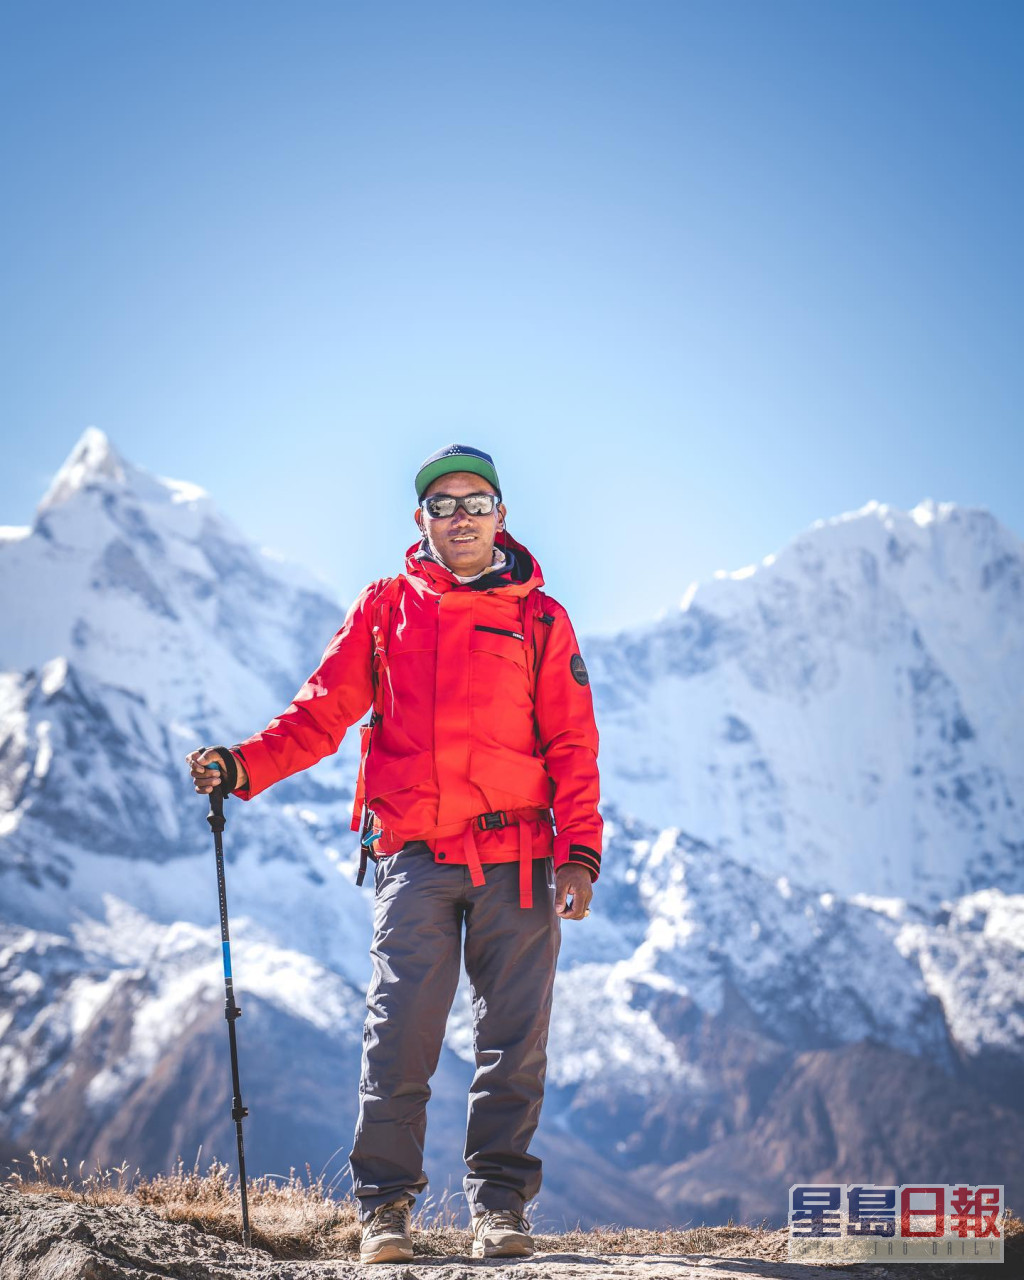 「雪巴人」里塔第26次登顶珠峰。FB图片